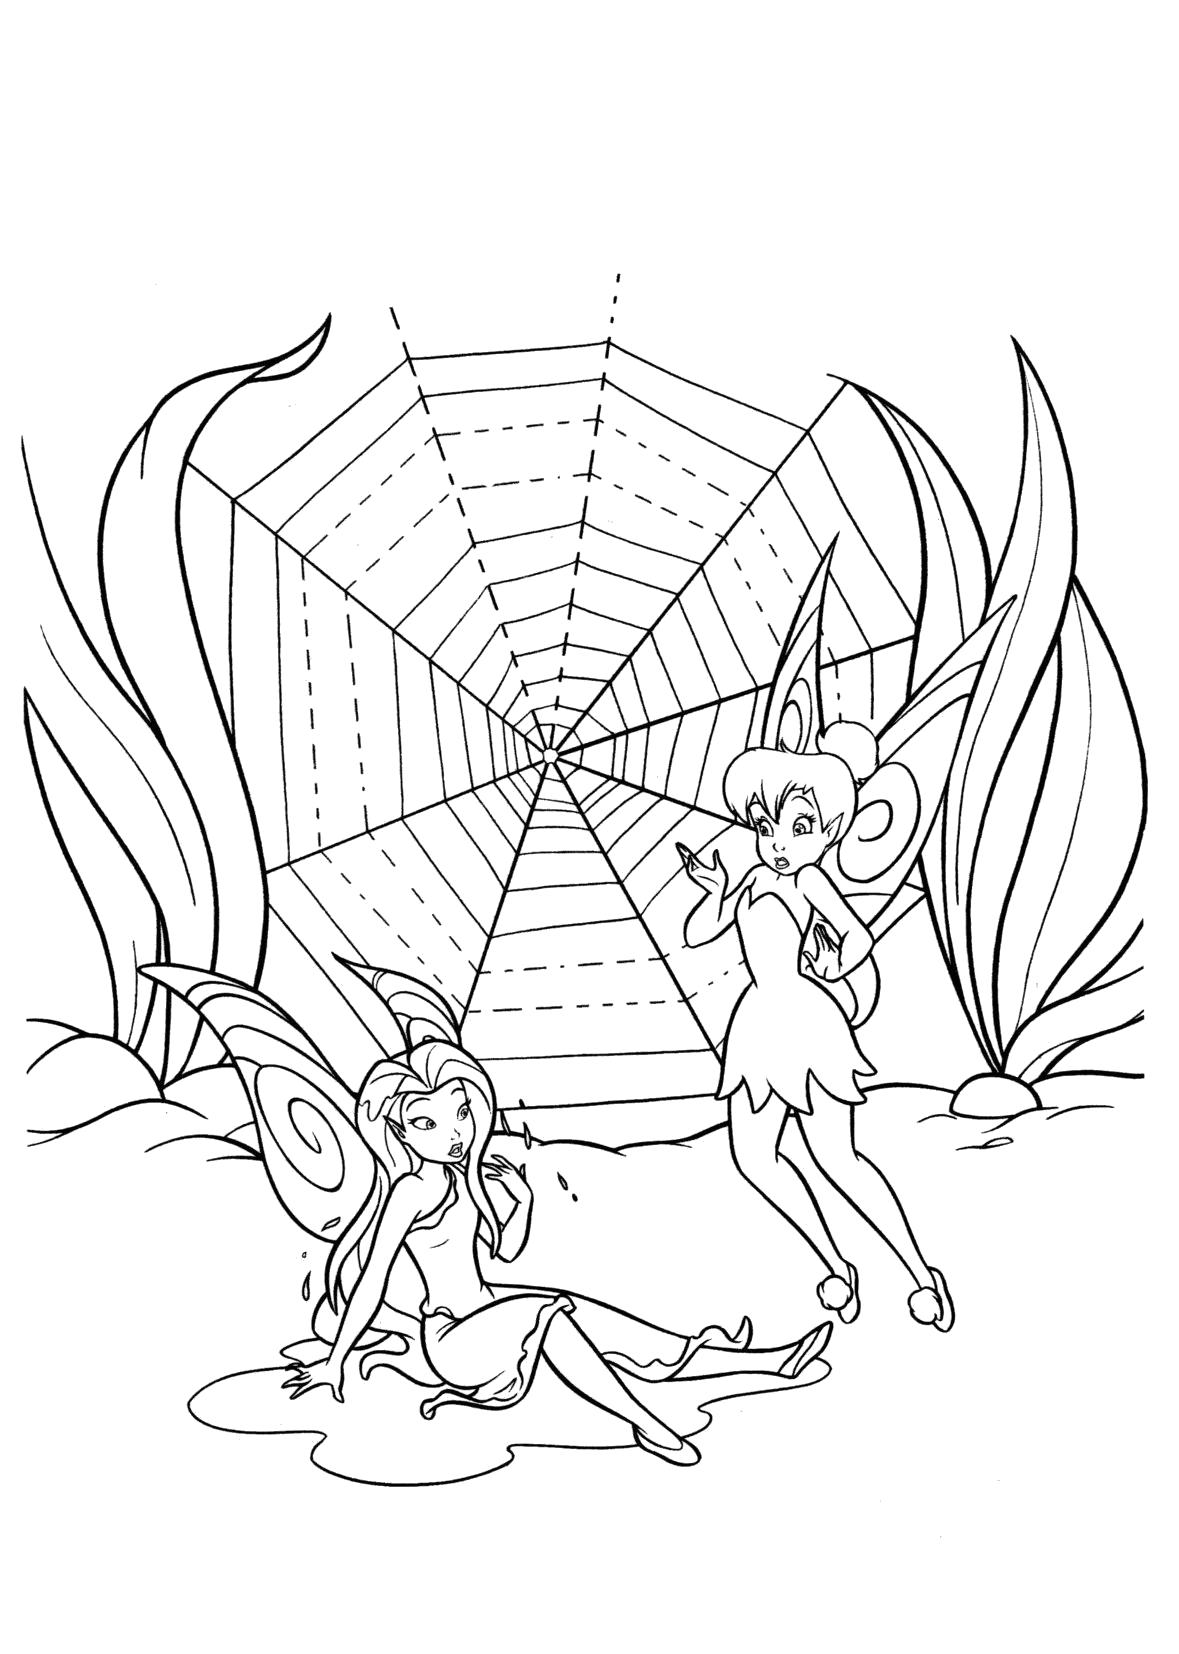 Раскраска Раскраска Серебрянка и Динь-Динь рядом с паутиной. мифические существа